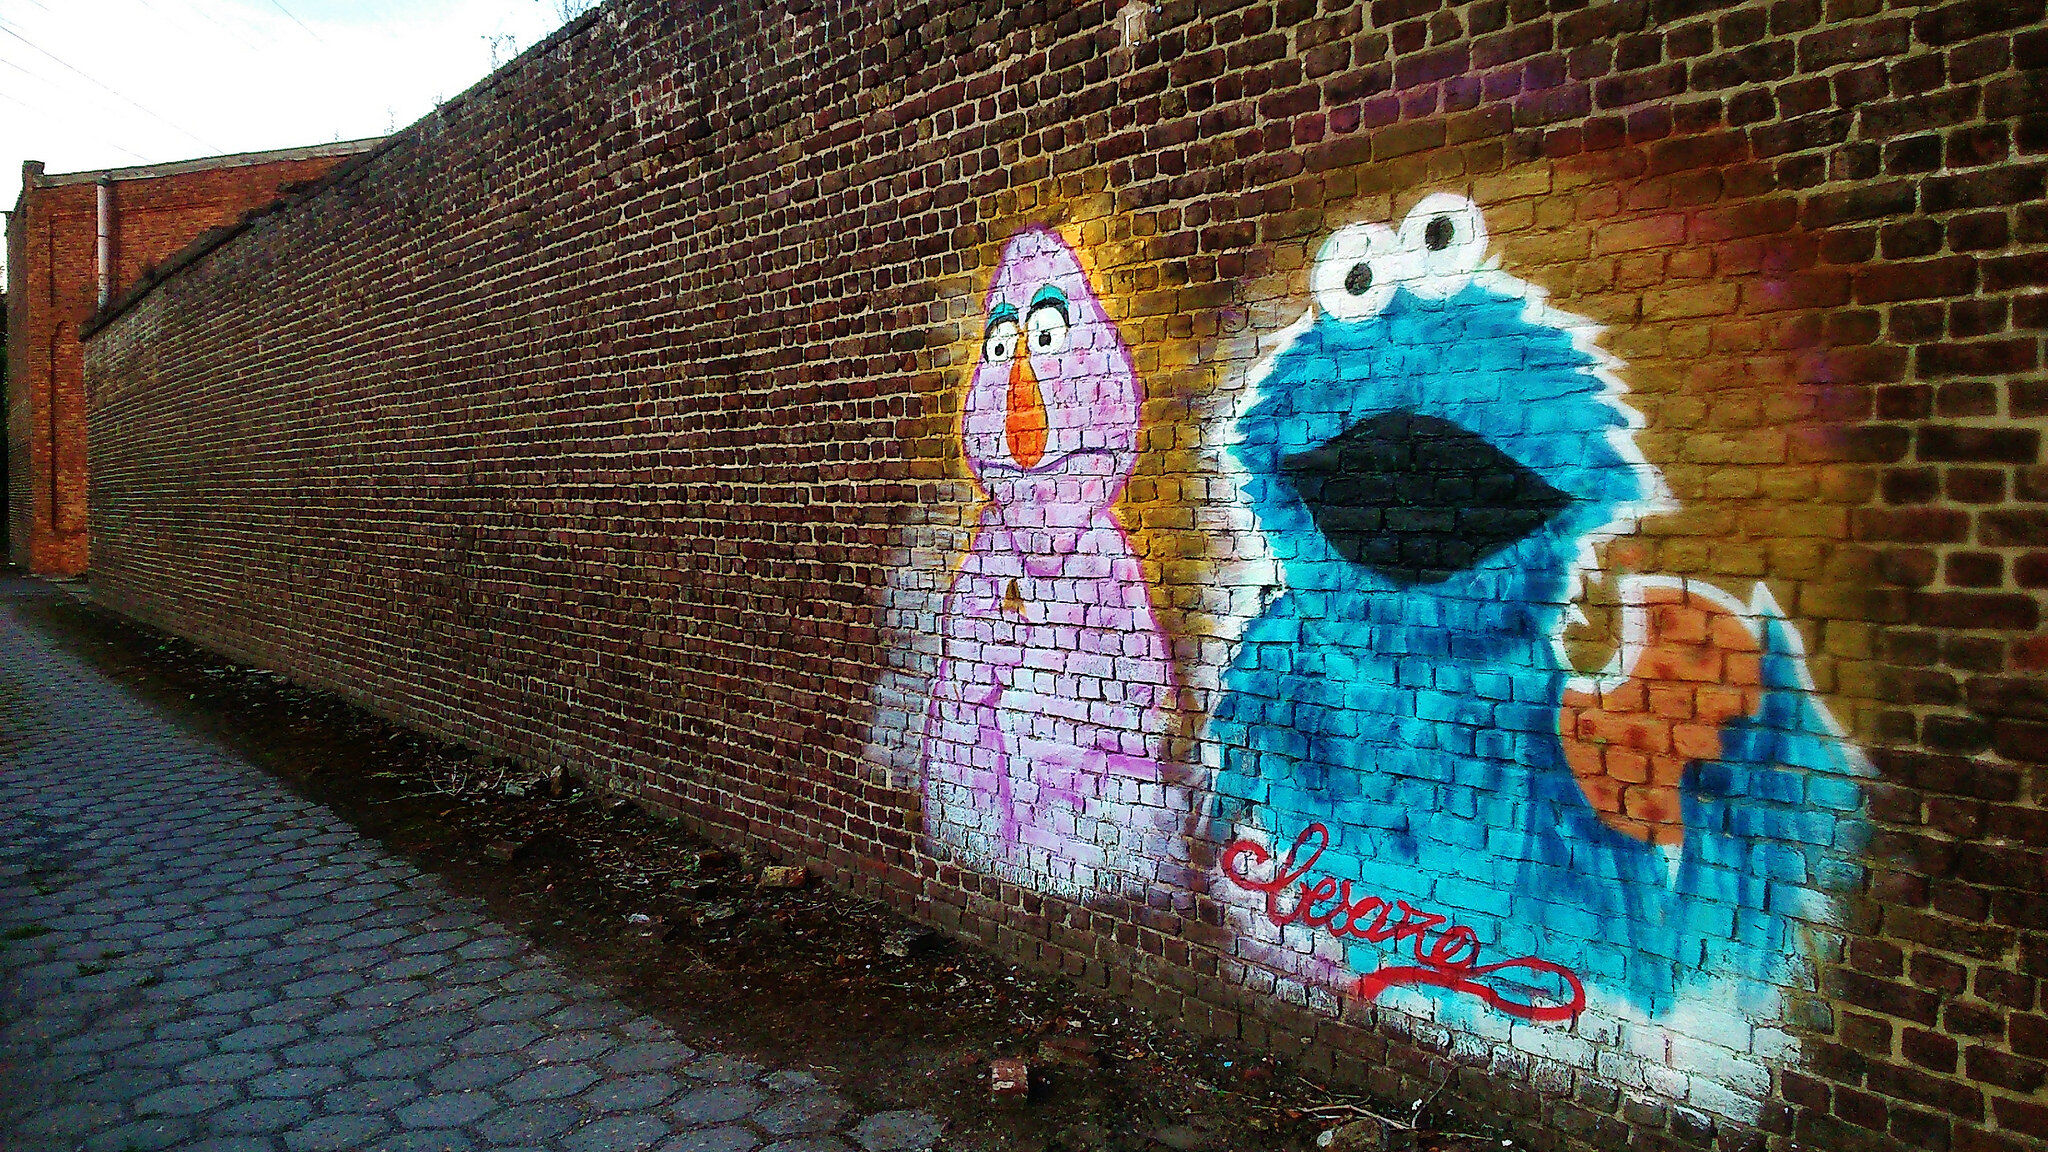 Unknown - Ghent&mdash;Sesame Street